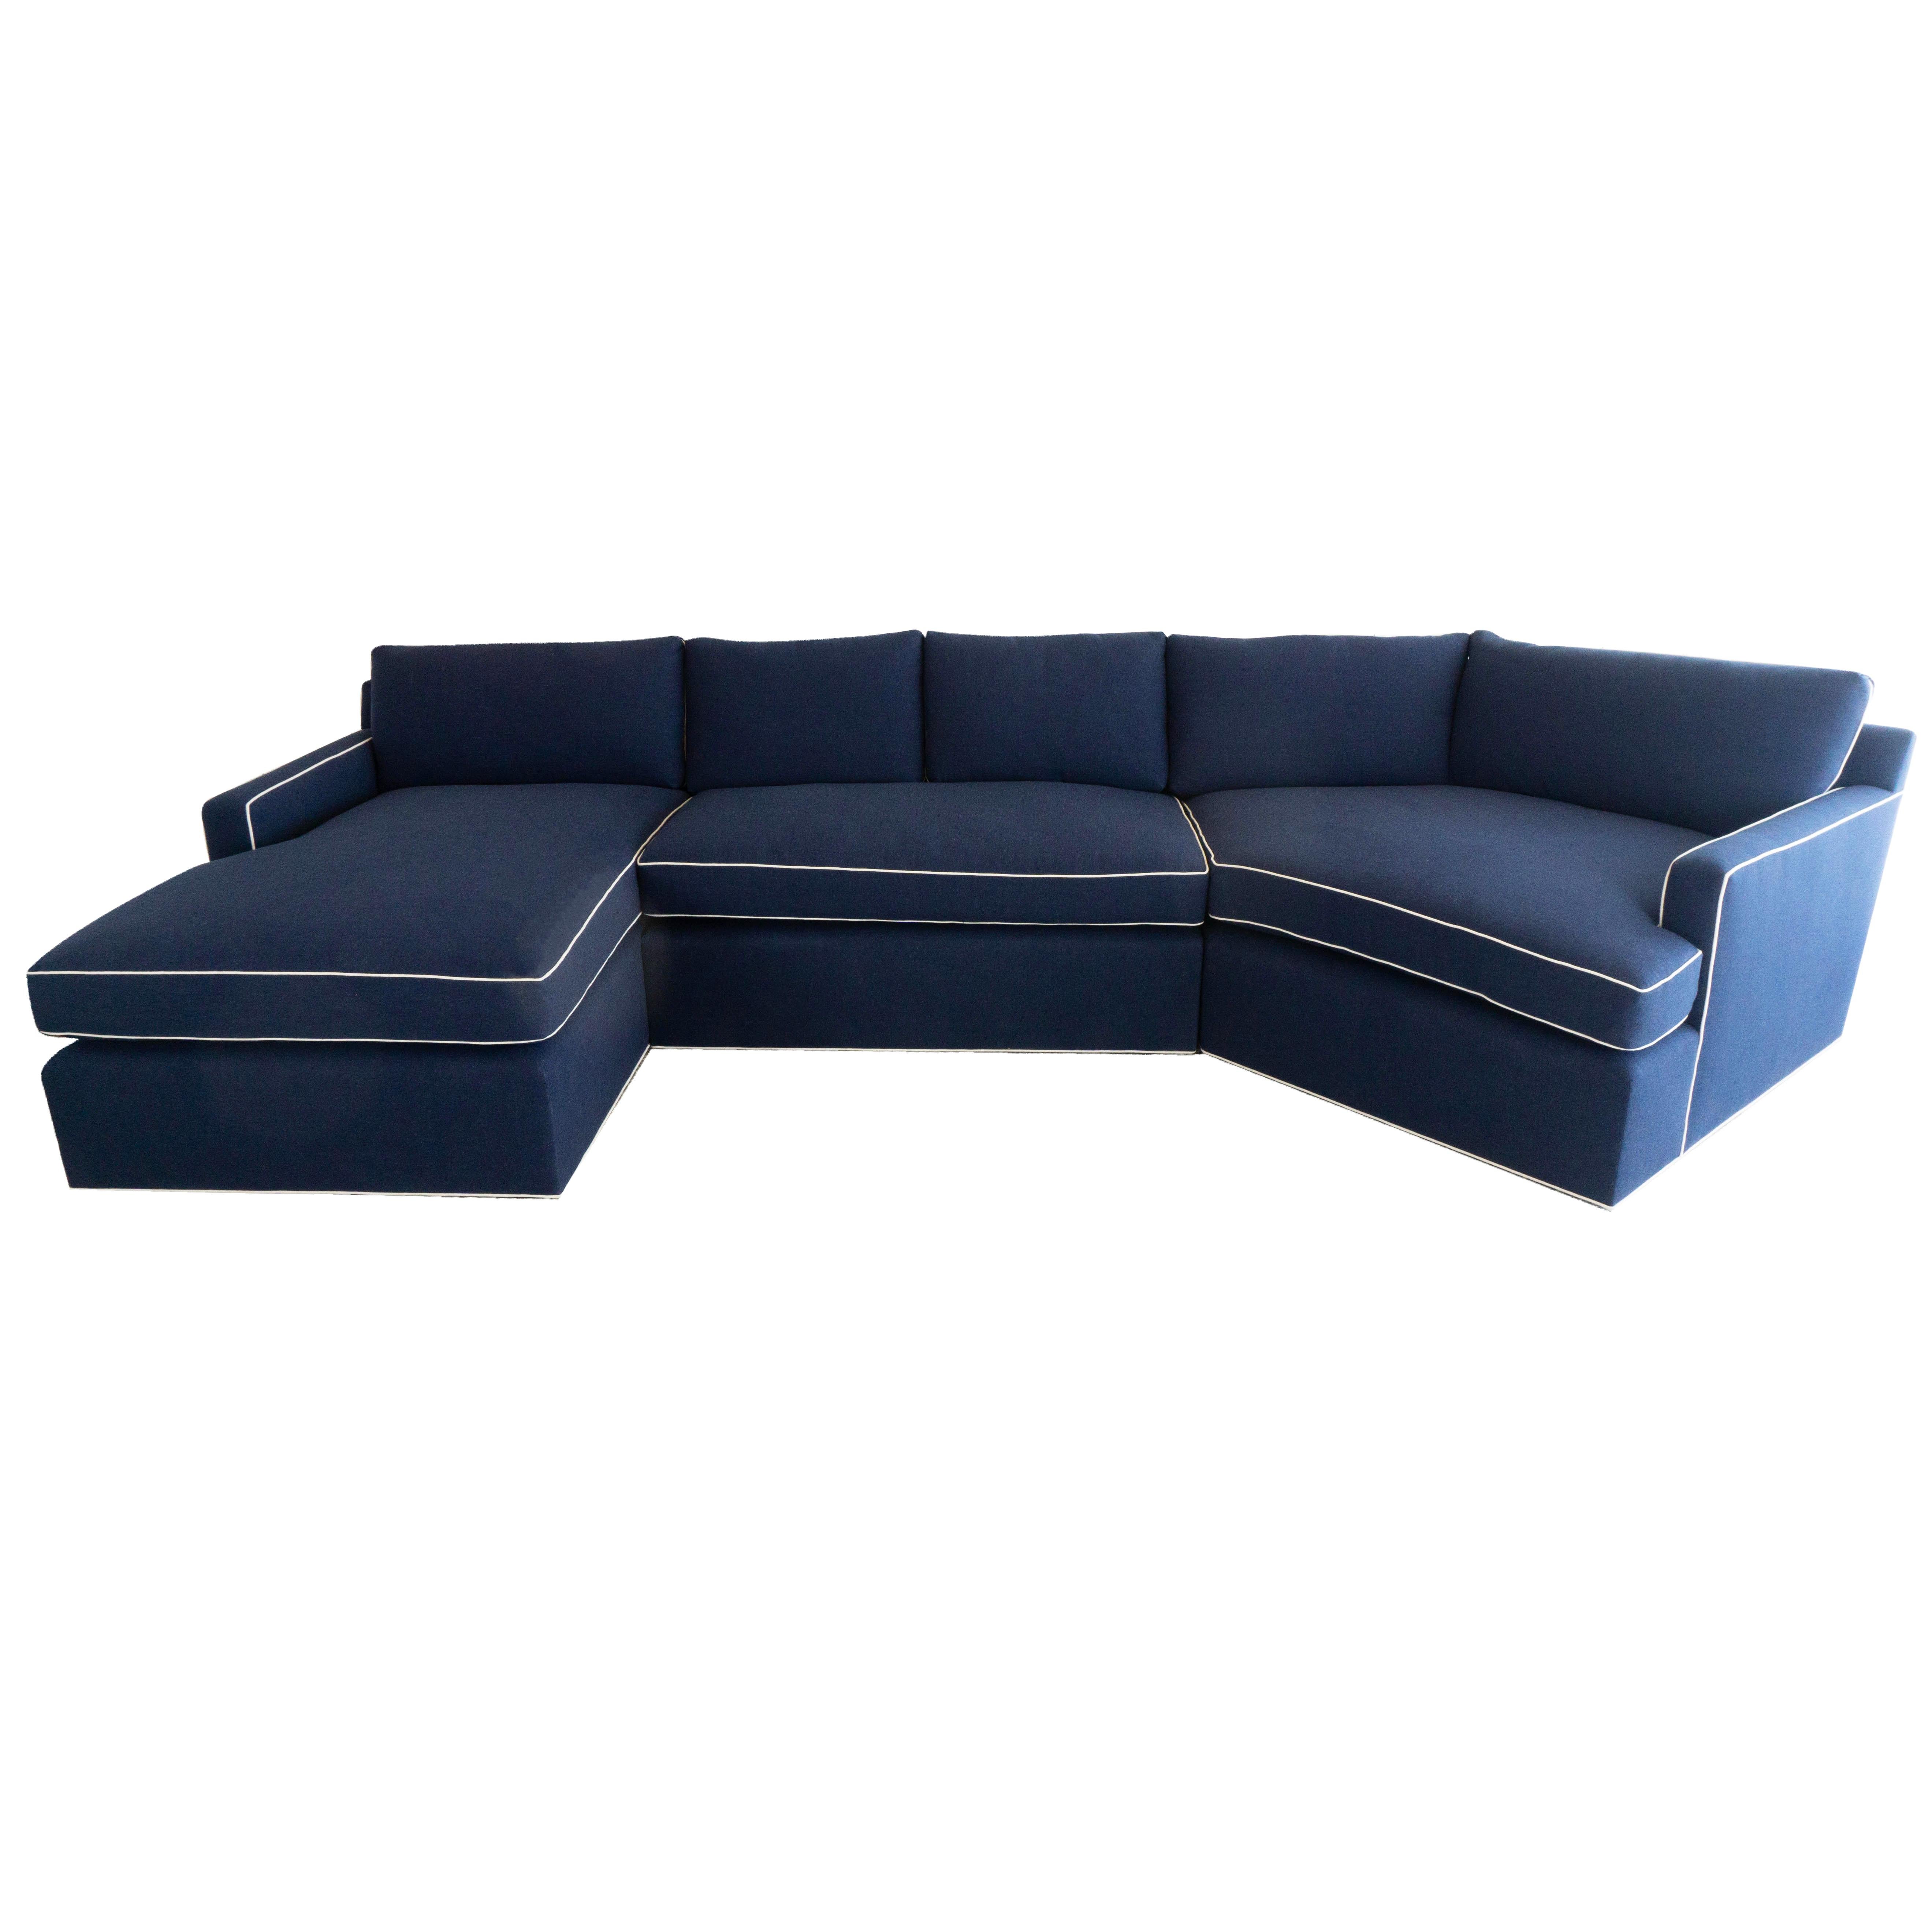 Grand canapé sectionnel personnalisé avec chaise longue en vente